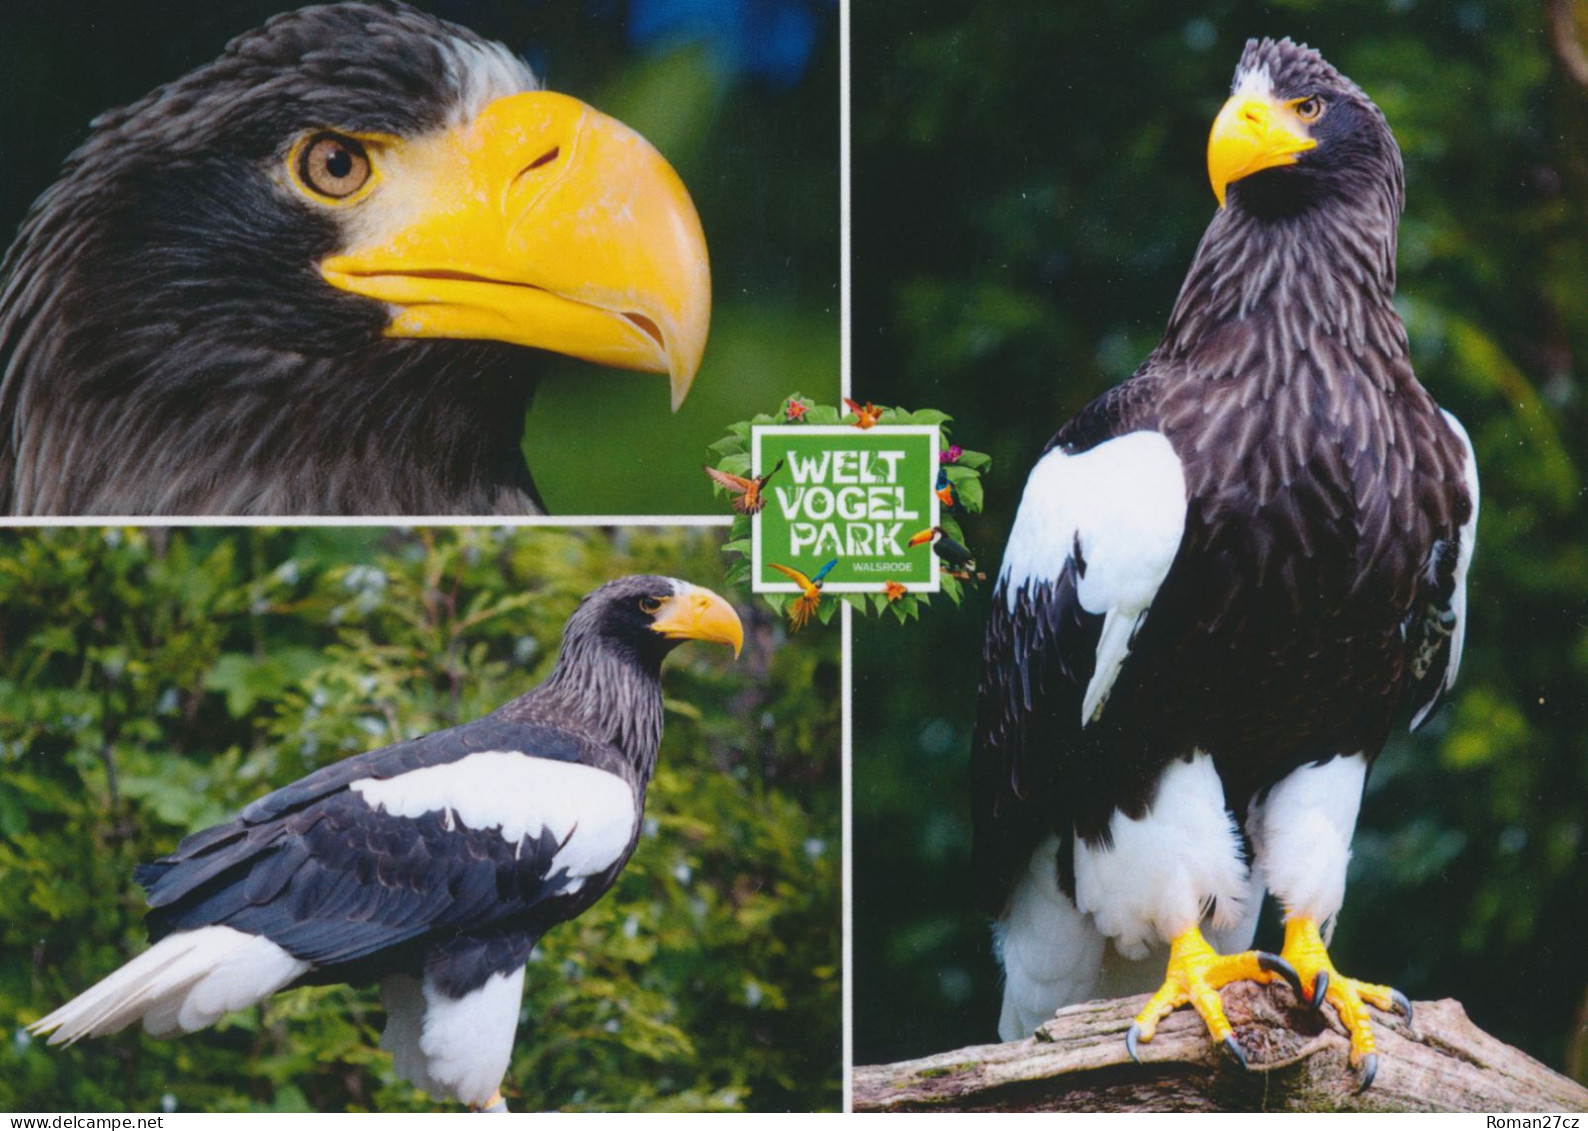 Vogelpark Walsrode (Bird Park), Germany - Eagle - Walsrode